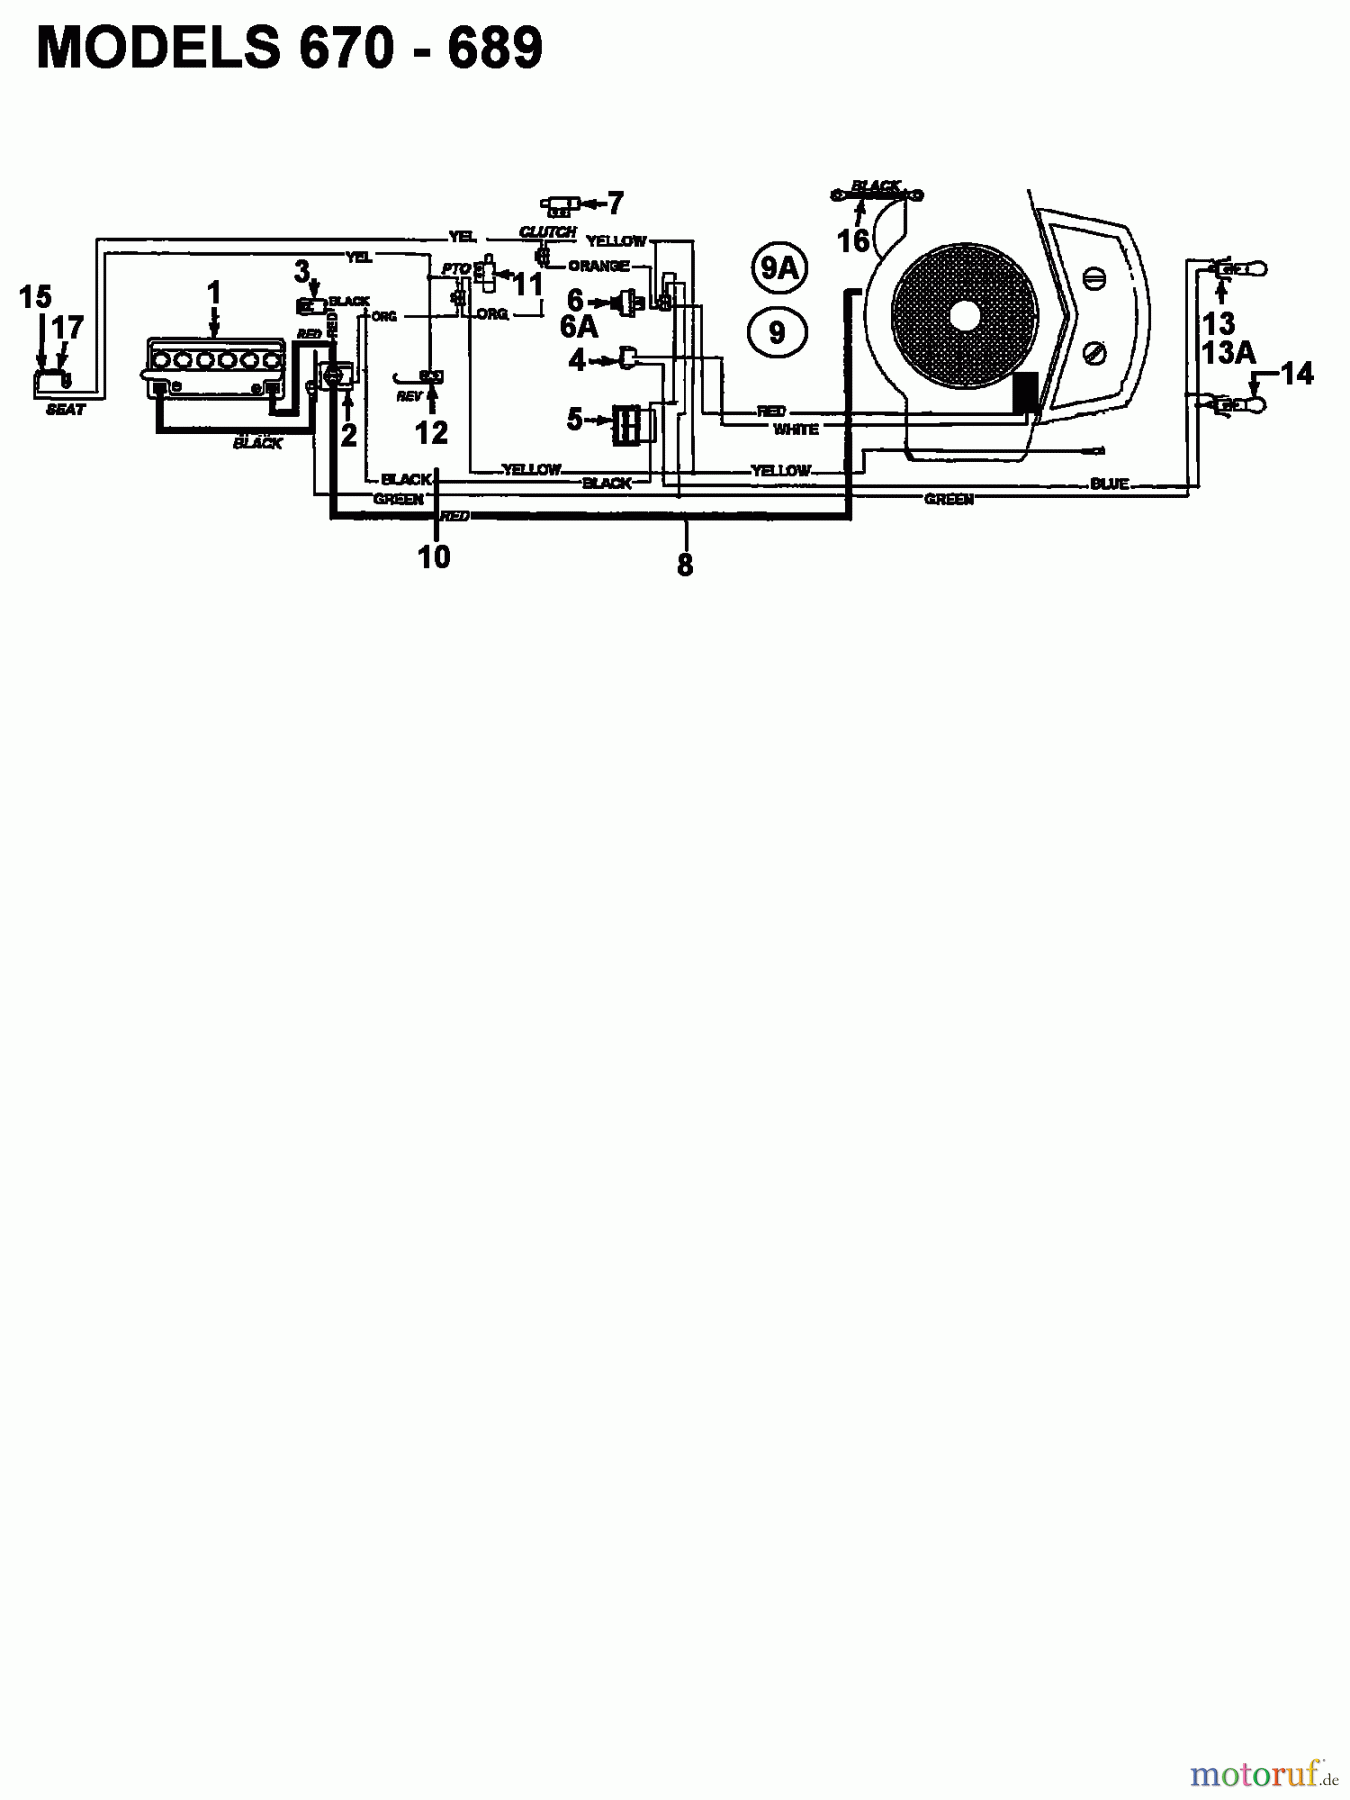  Columbia Rasentraktoren 112/960 N 132-650F626  (1992) Schaltplan 2 Zylinder